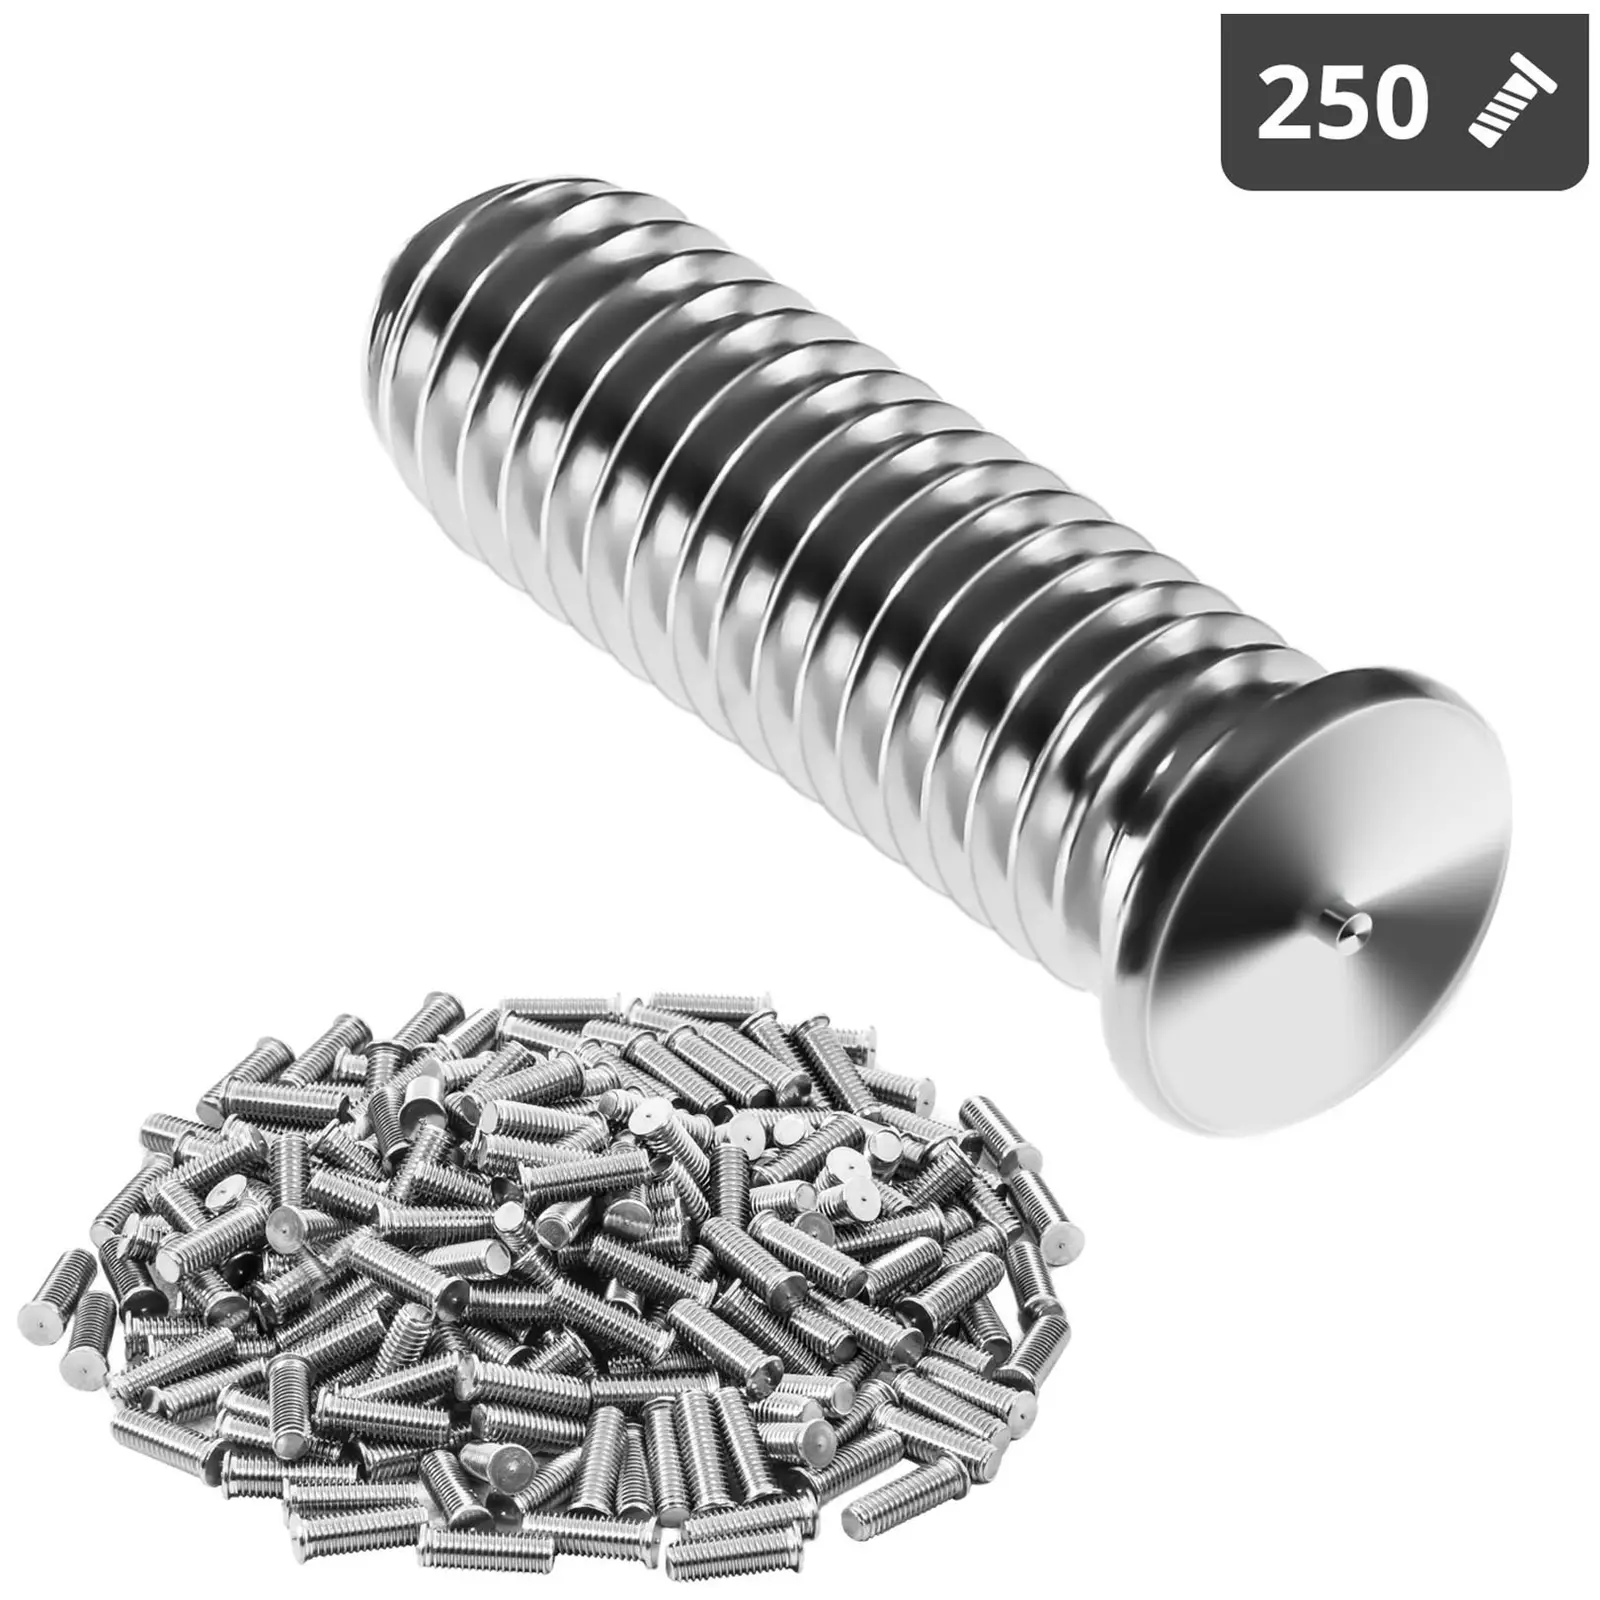 Svetsbult - M8 - 25 mm - rostfritt stål - 250 st